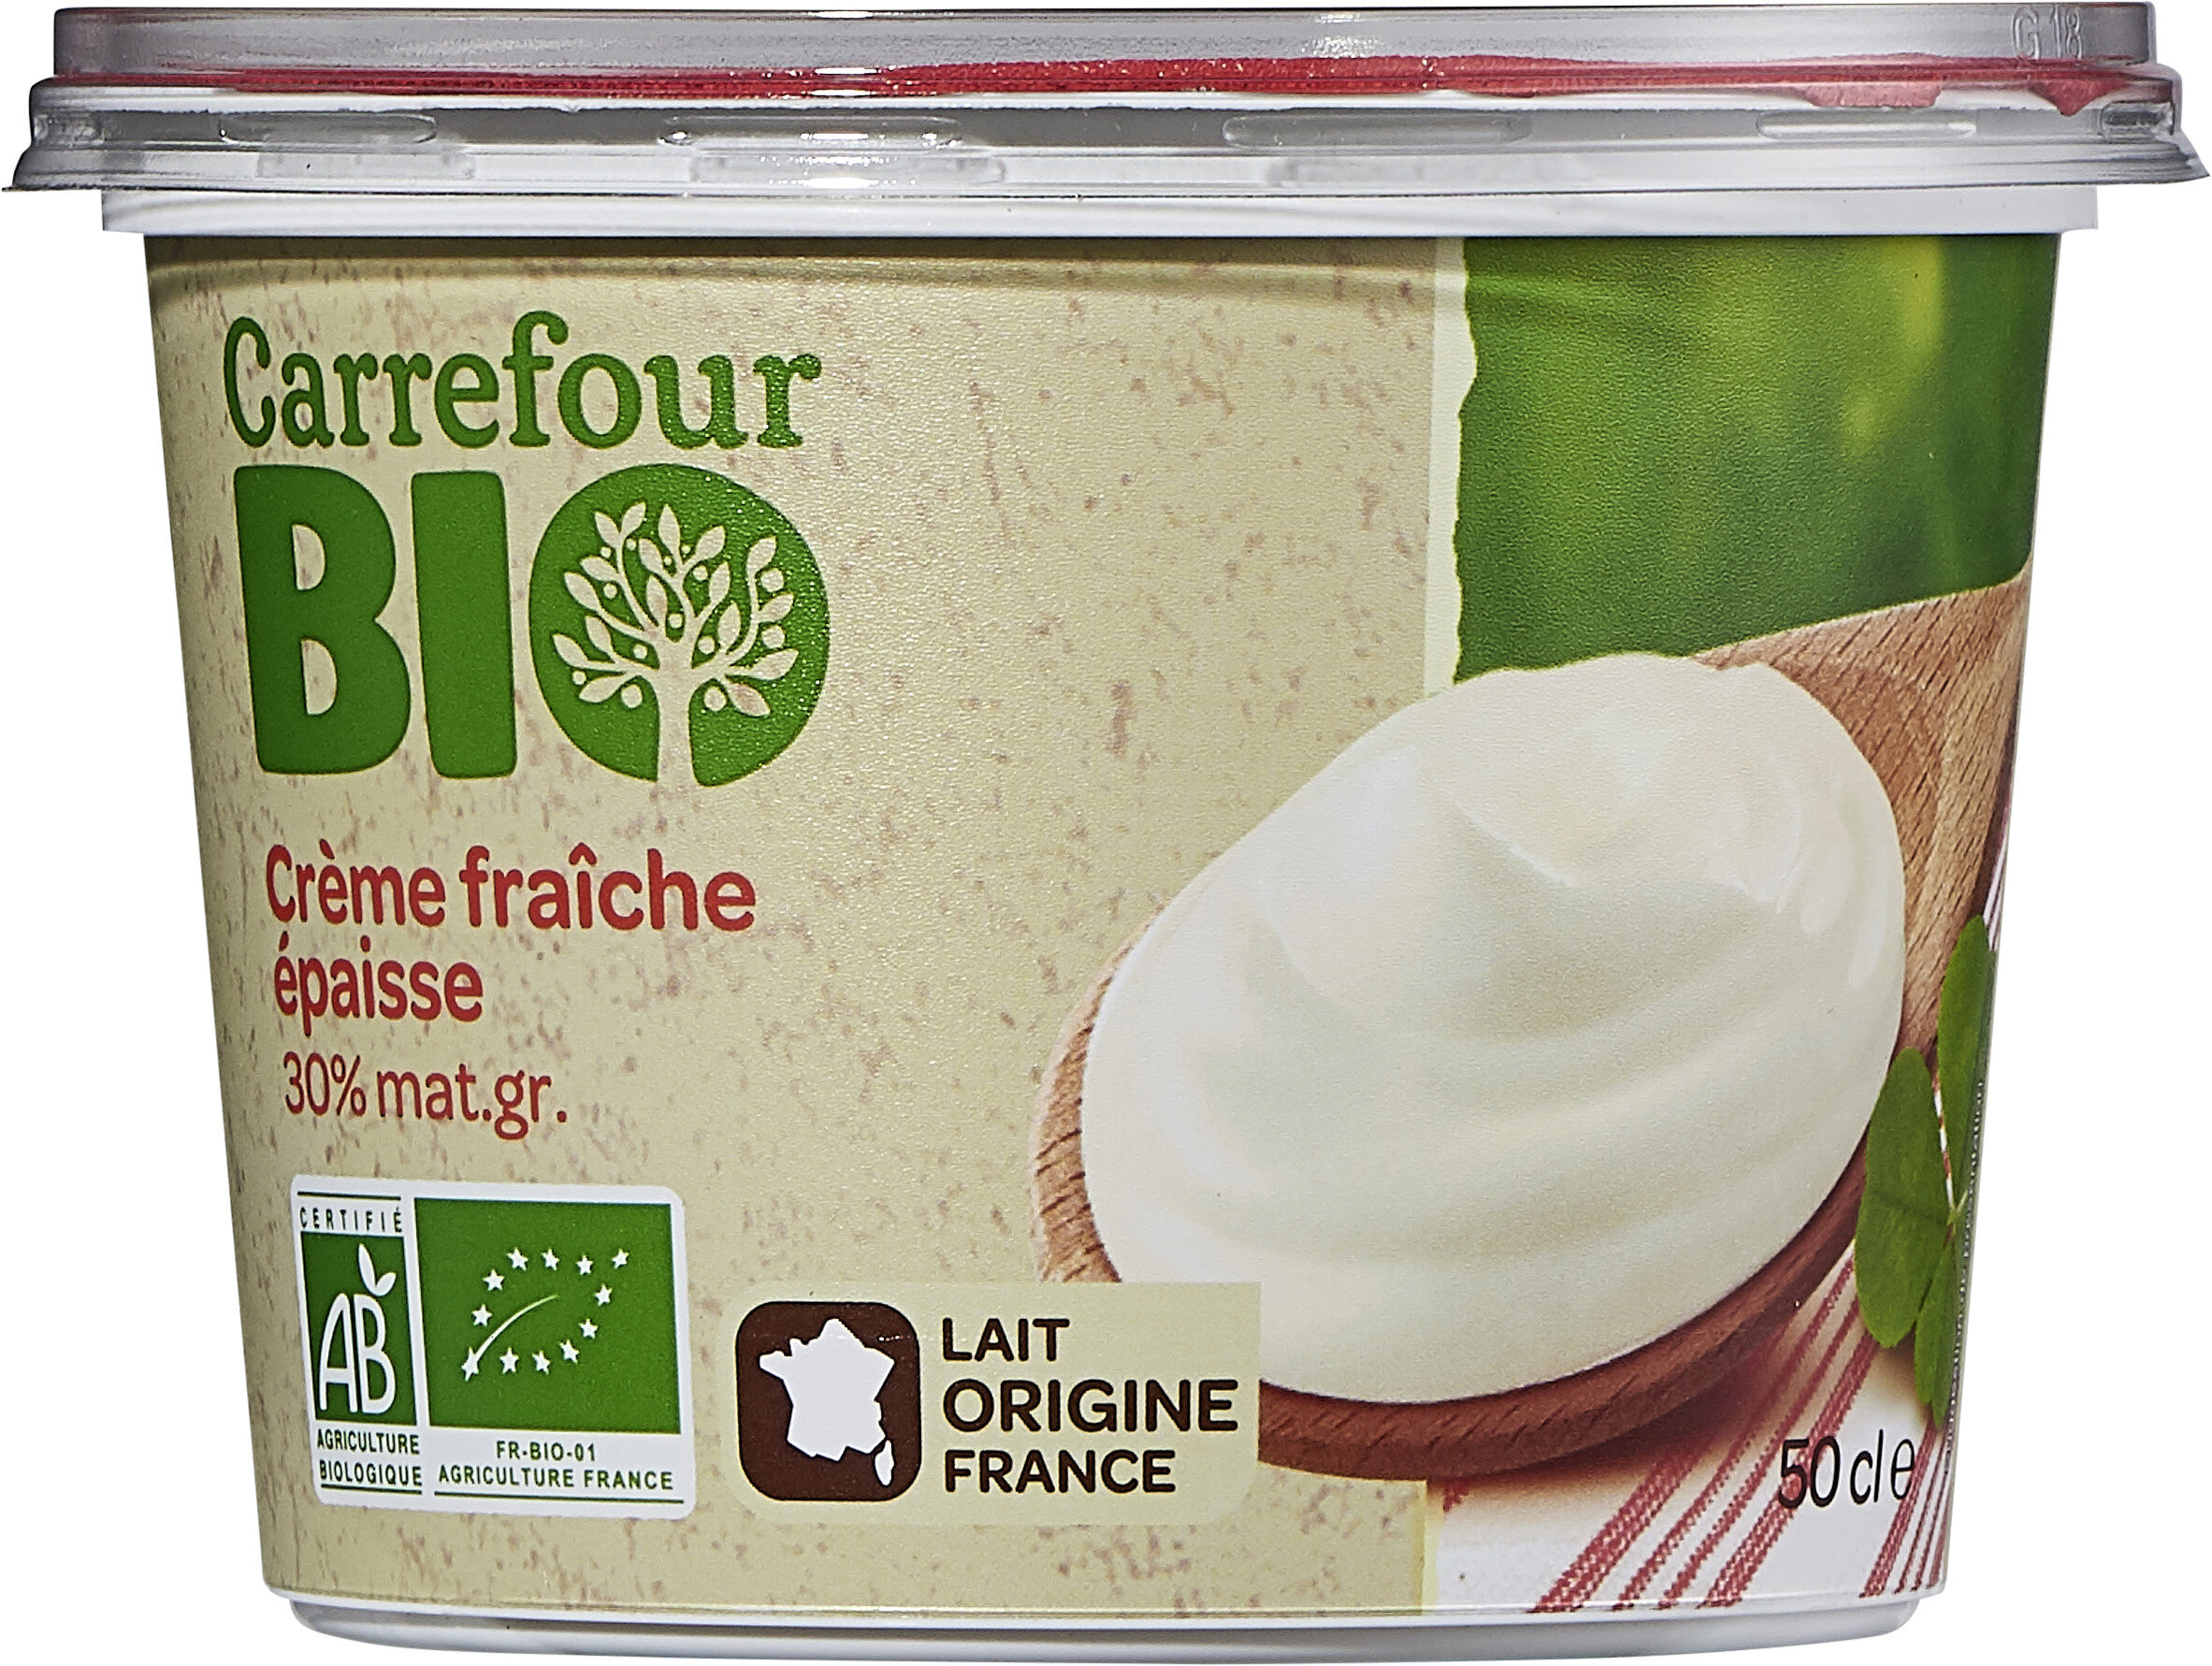 Crème fraîche épaisse - Product - fr